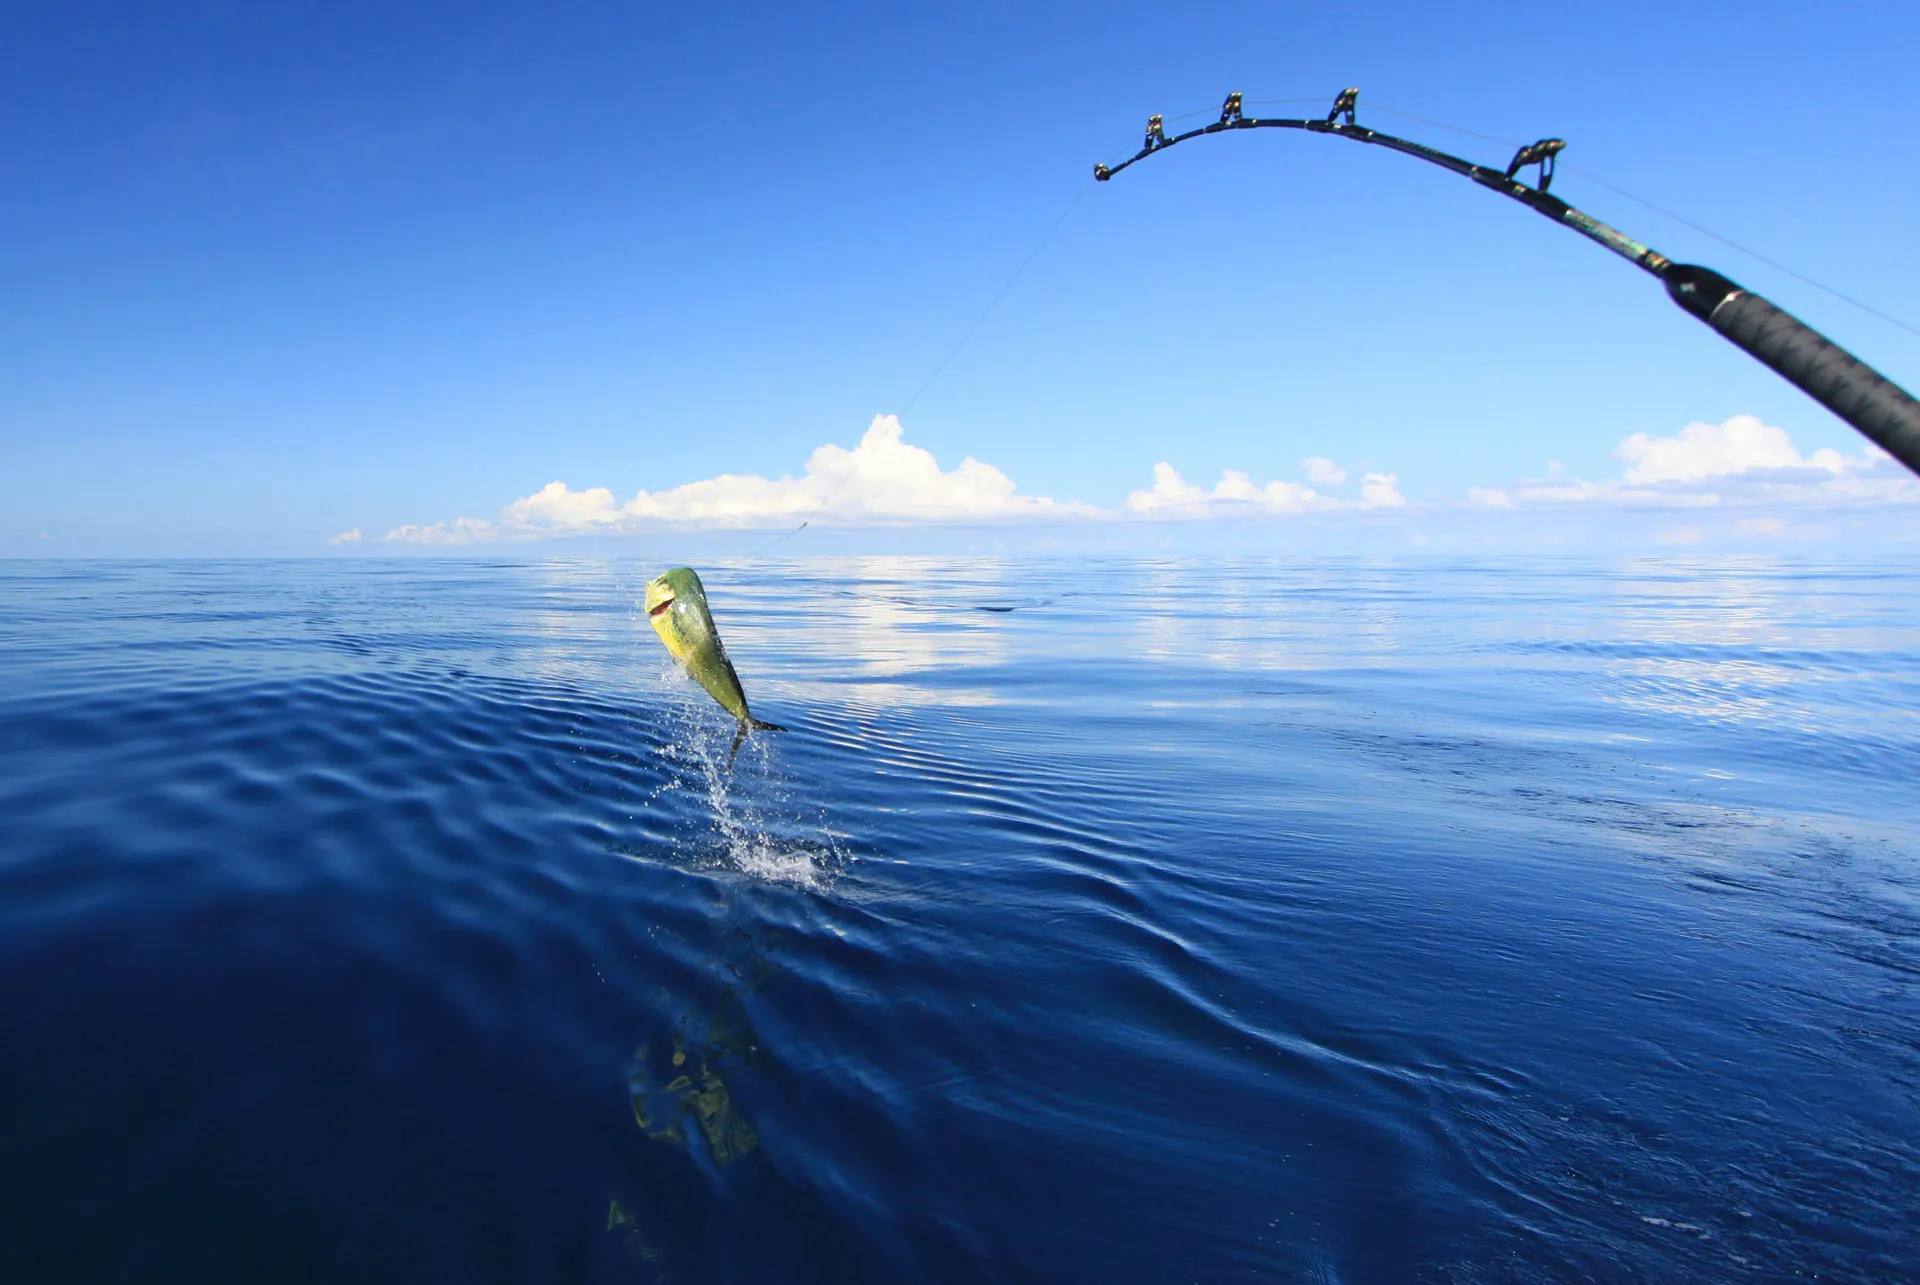 Zanzibar Deep Sea Fishing in Tanzania, Africa | Fishing - Rated 0.7